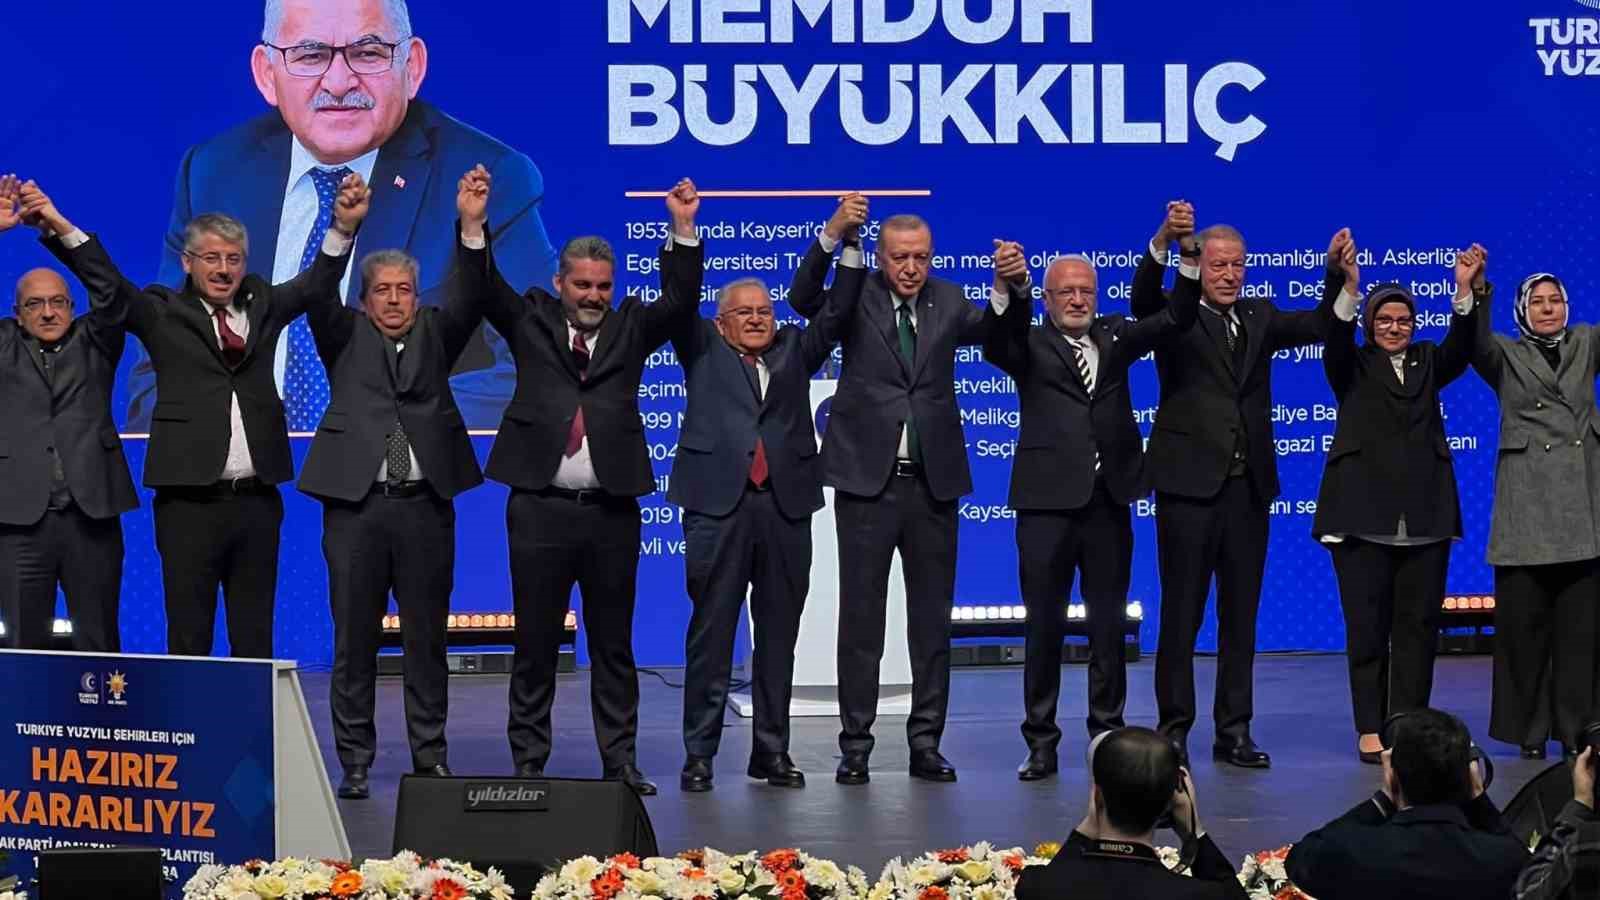 Memduh Büyükkılıç, Kayseri Büyükşehir Belediye Başkanı adayı olarak belirlendiği duyuruldu.